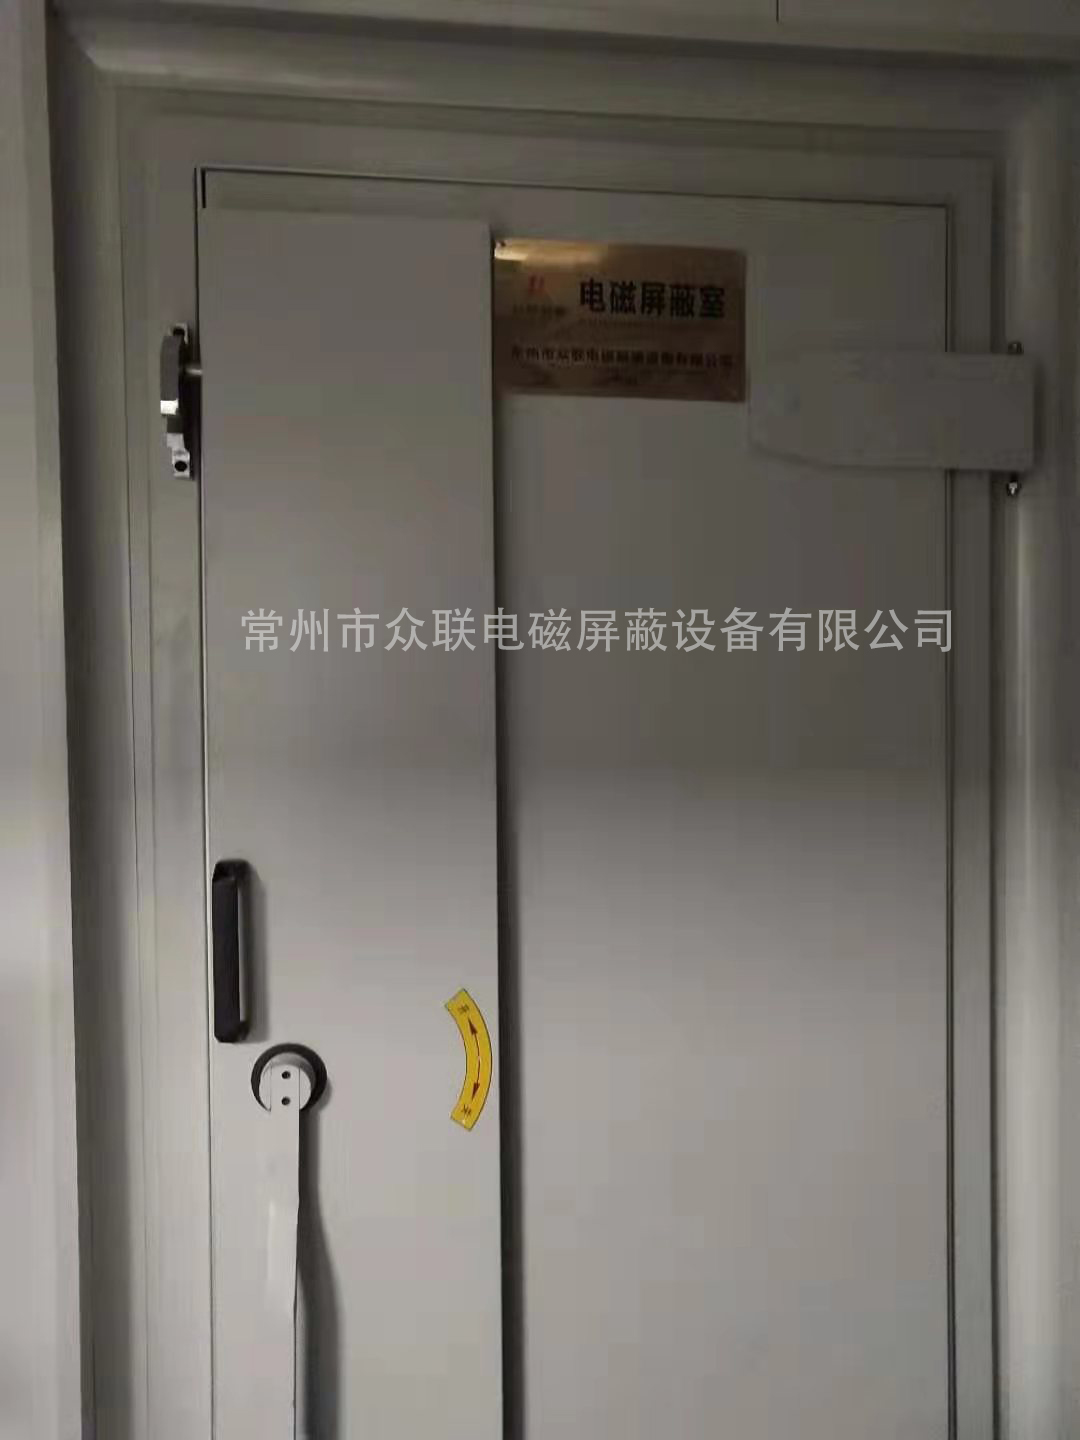 中国科学院动植物研究所屏蔽机房